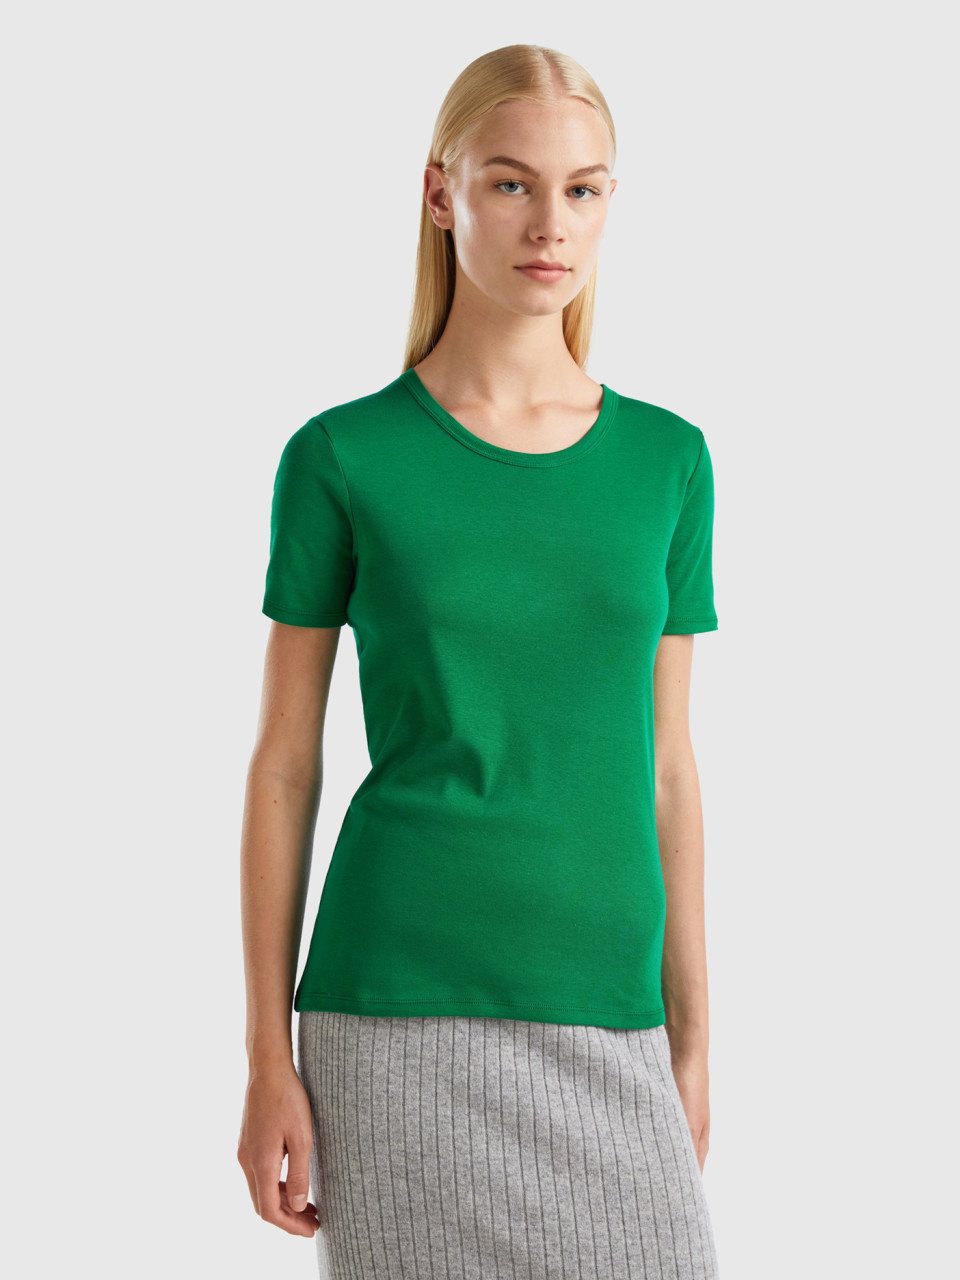 Benetton, Long Fiber Cotton T-shirt, Green, Women